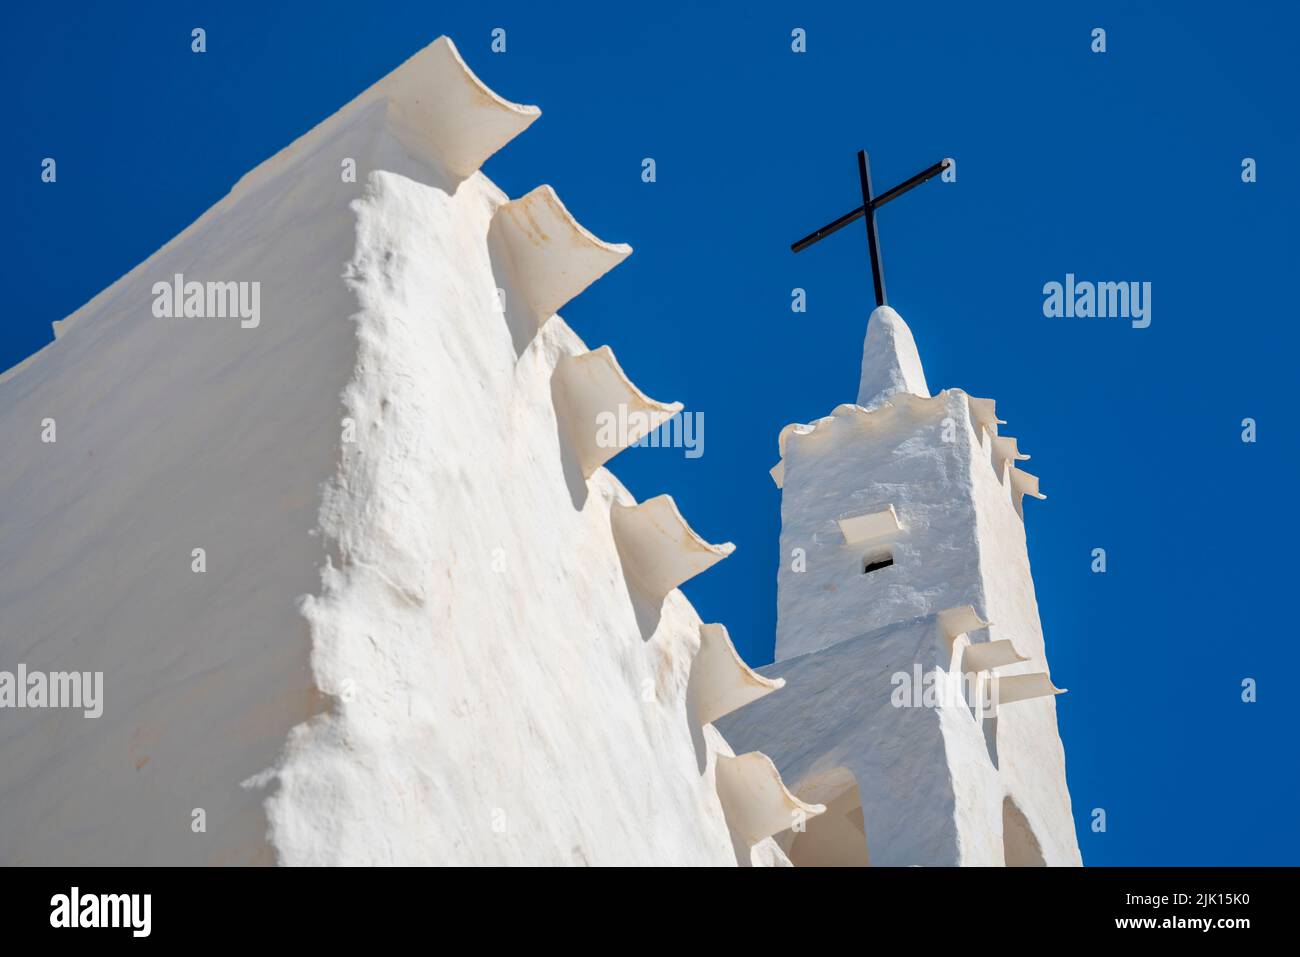 Vista de la iglesia encalada y el cielo azul, Binibequer Vell, Menorca, Islas Baleares, España, Mediterráneo, Europa Foto de stock